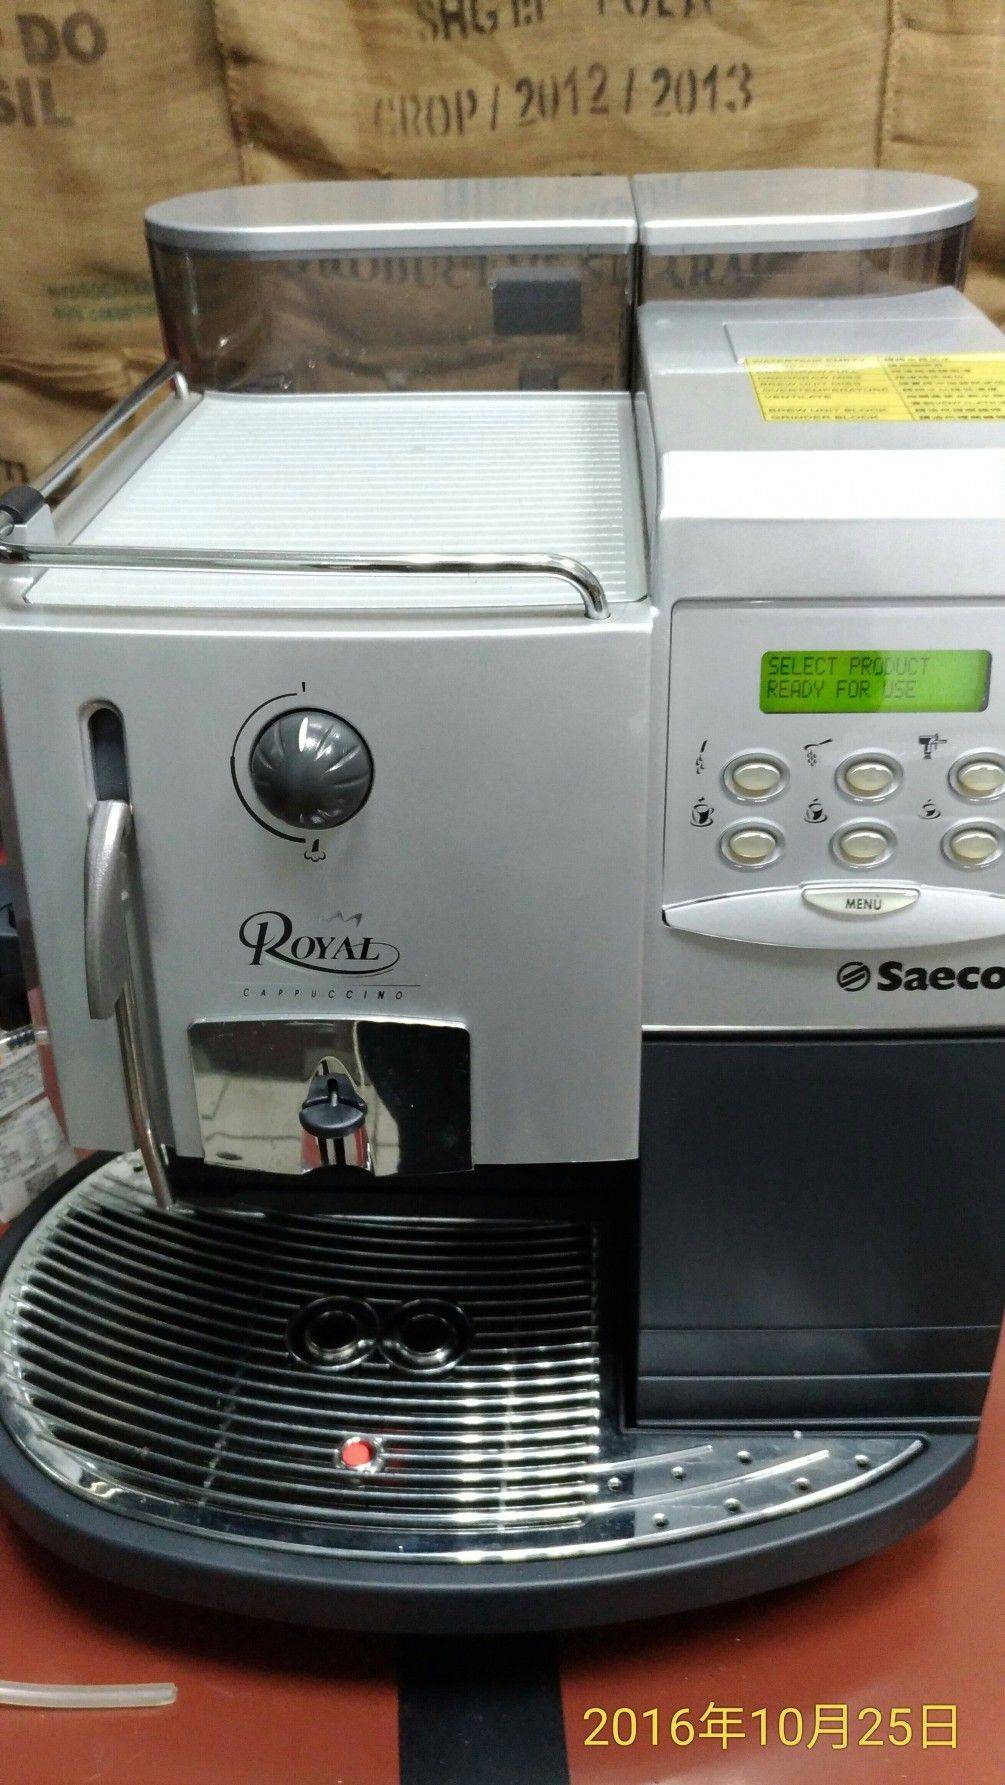 saeco專業營業機器 展示機